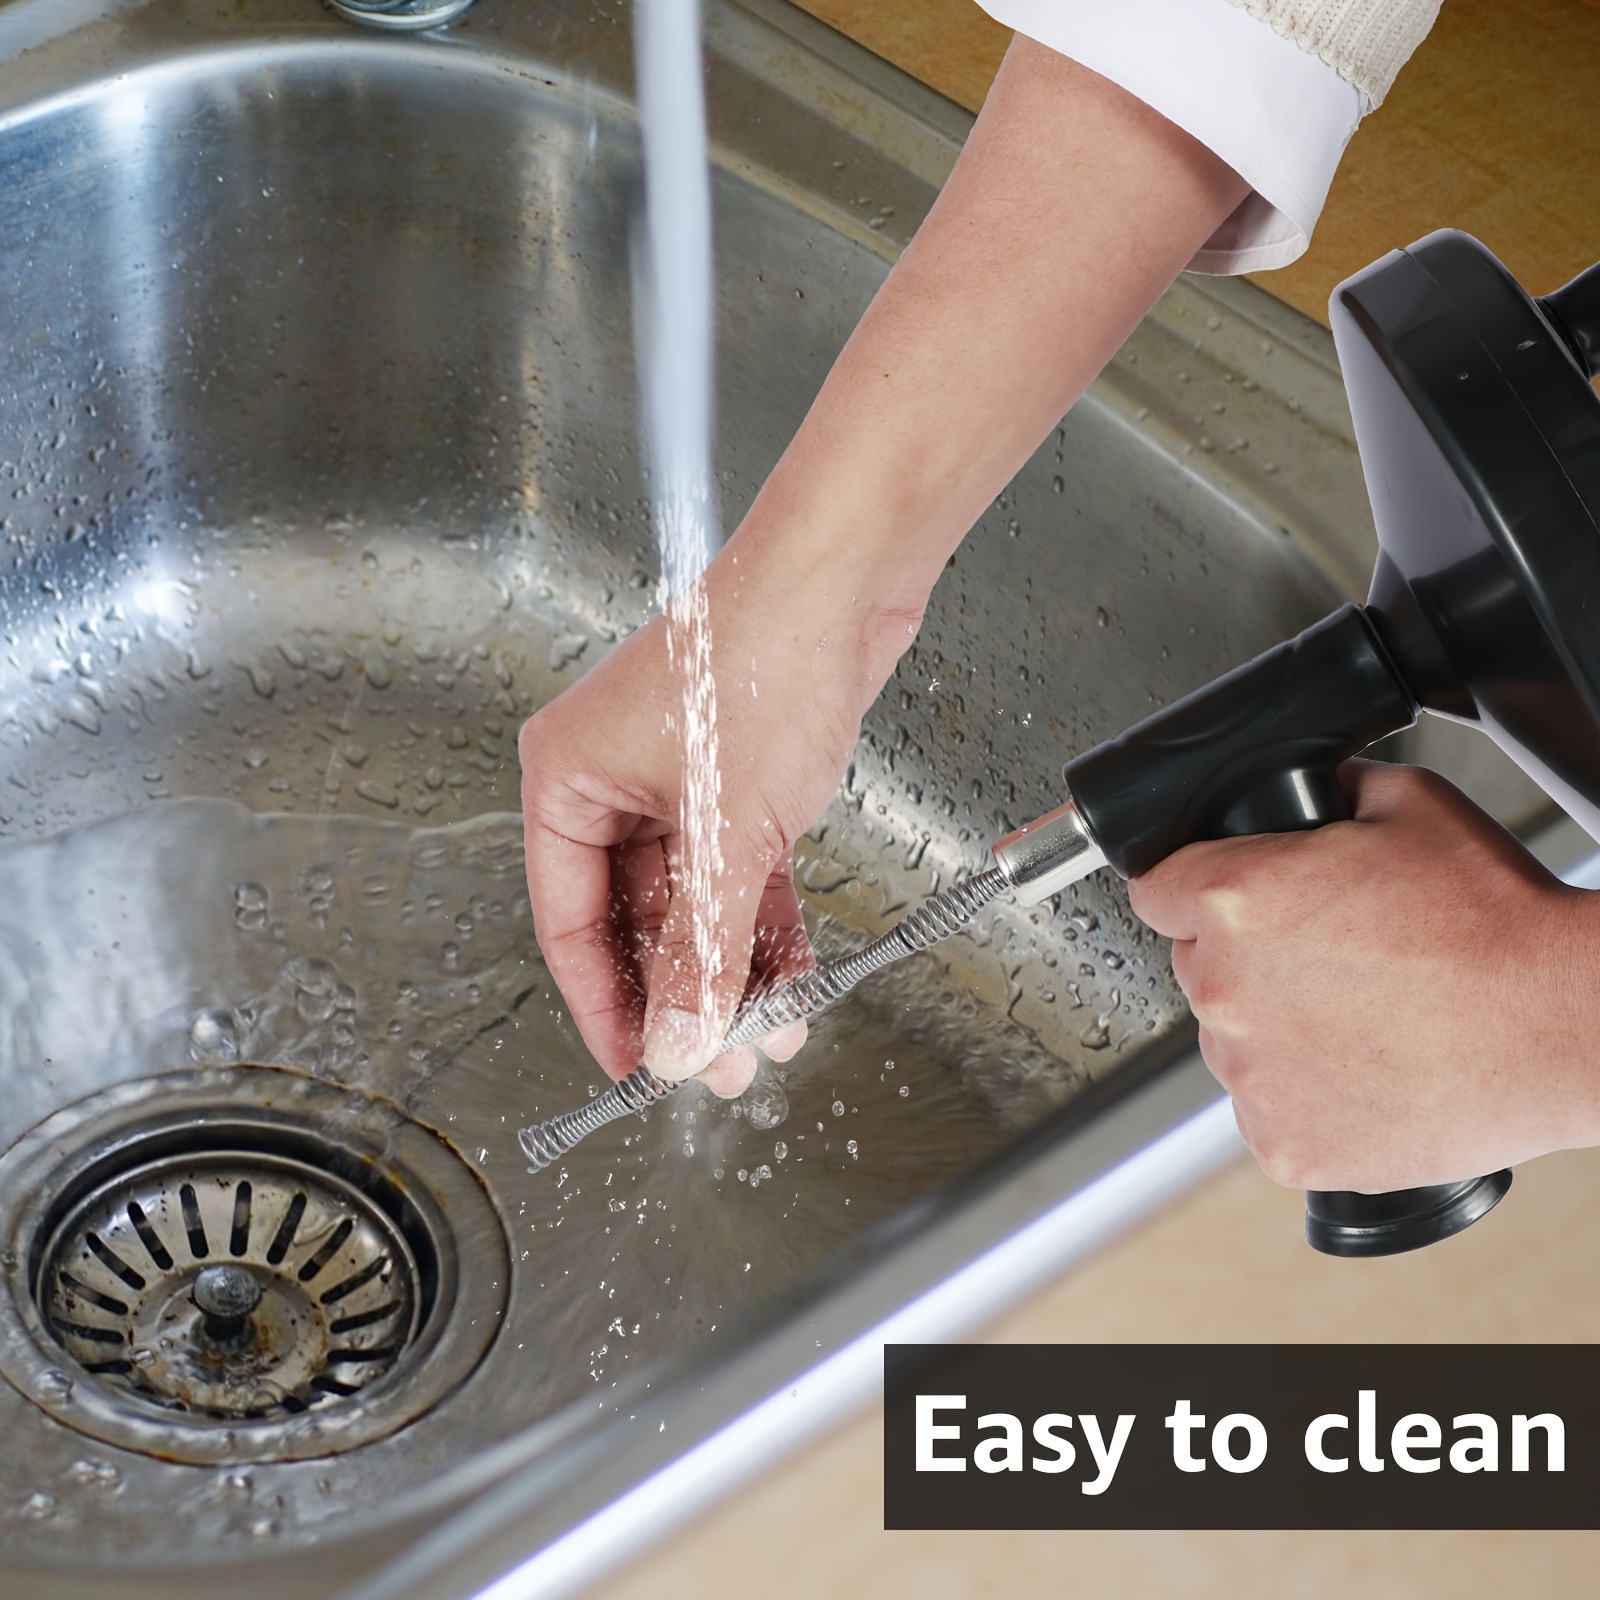 Agarrador de objetos, limpiador de drenaje, para quitar cabello de la  cocina, baño, fregadero, tina y ducha